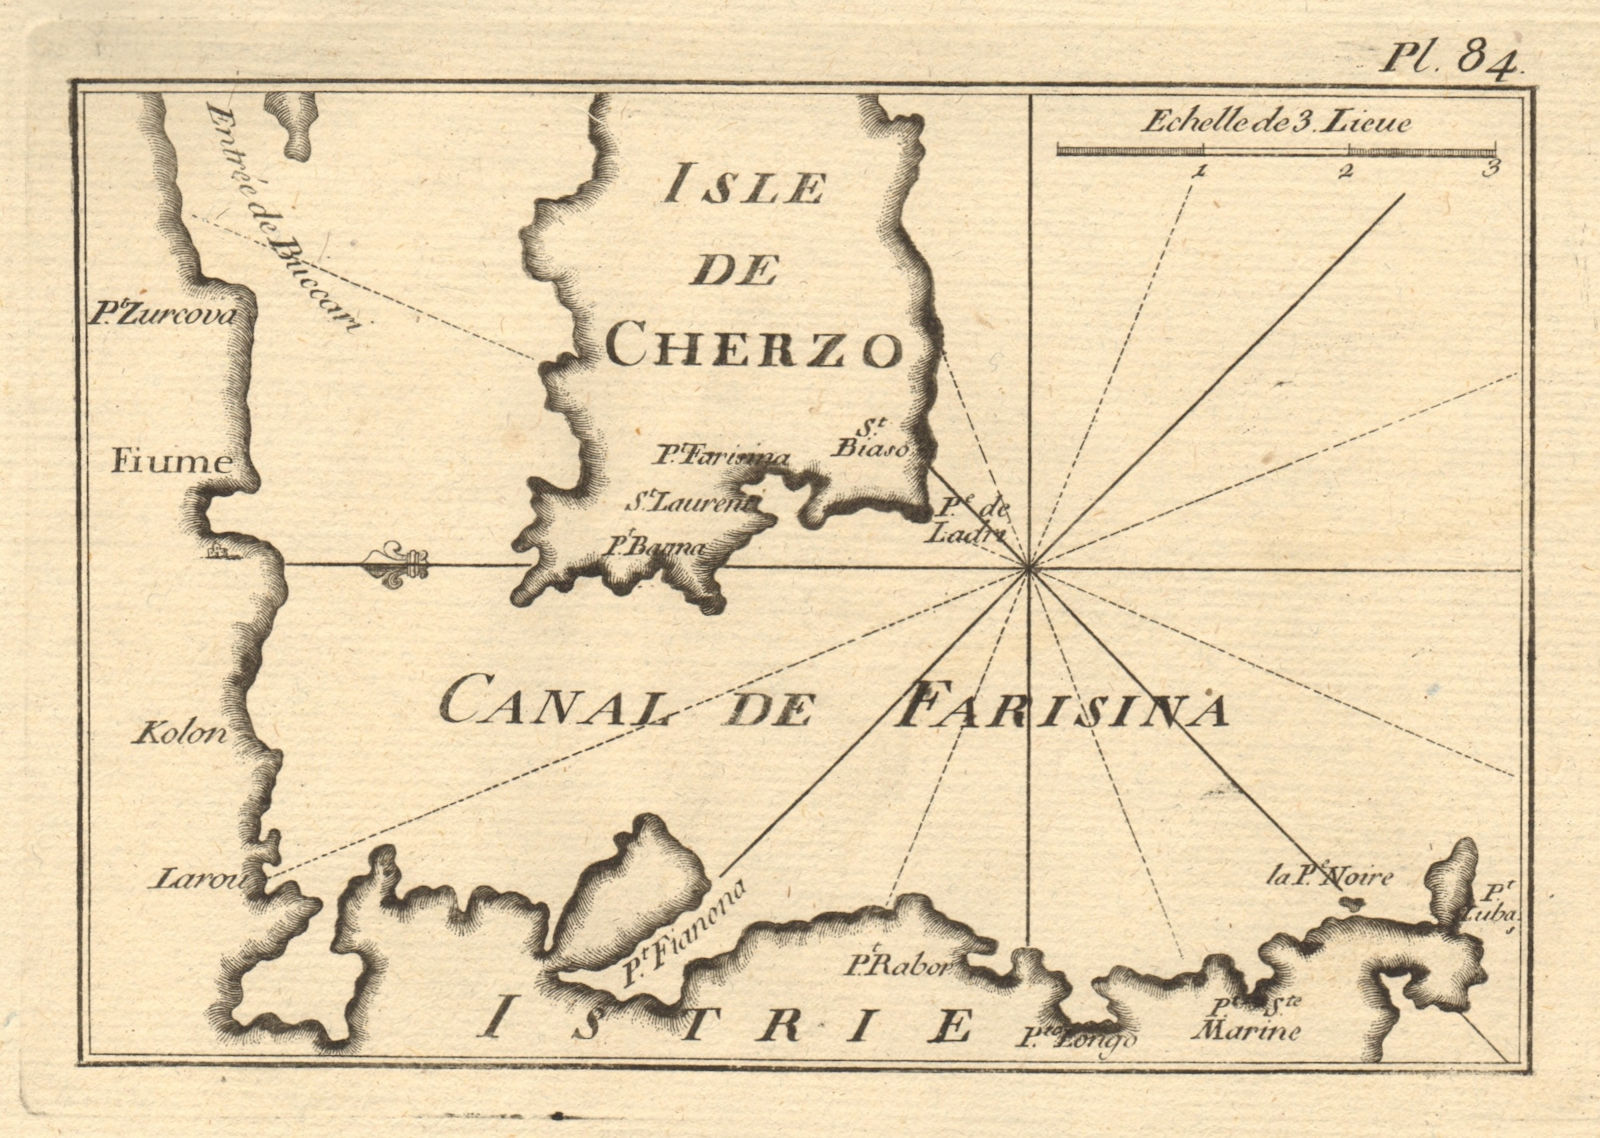 Fiume, Cherzo & Canal de Farisina. Istria Kvarner Gulf Rijeka Cres ROUX 1804 map